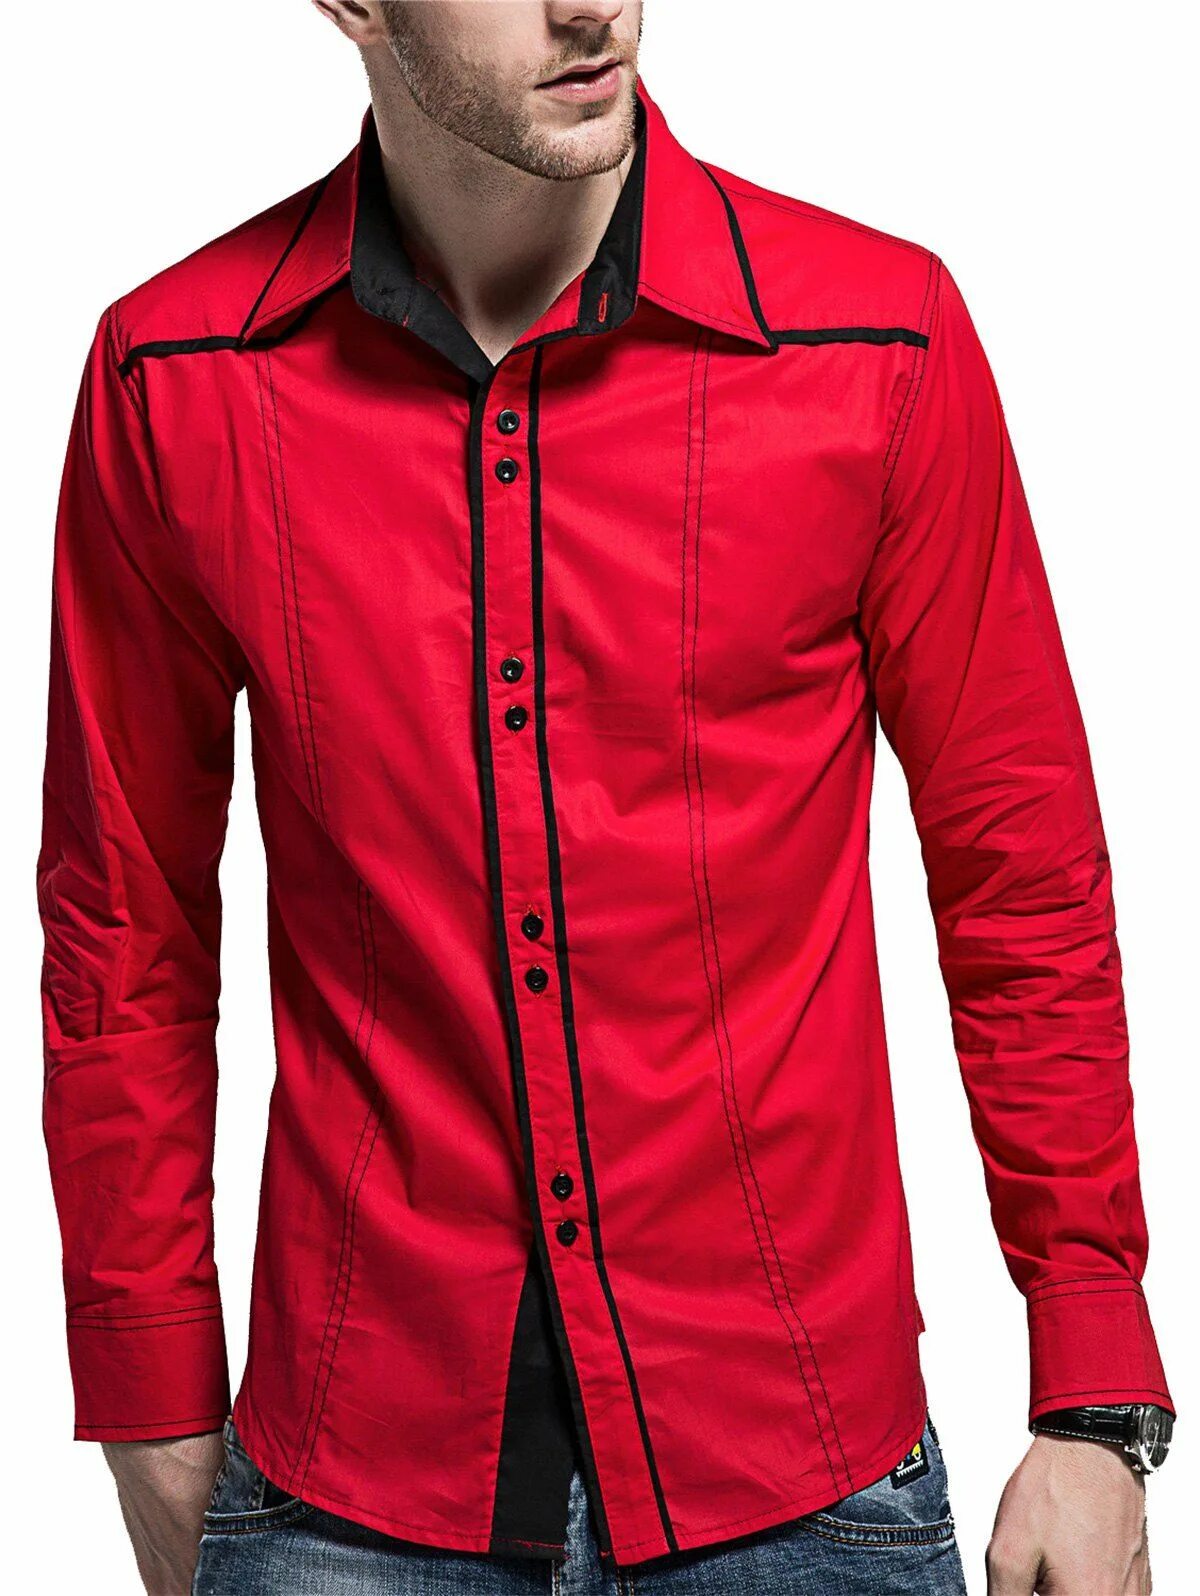 Красная рубашка текст. Красная рубашка. Красная сорочка мужская. Мужская рубашка красного цвета. Рубашка мужская с длинным рукавом красная.